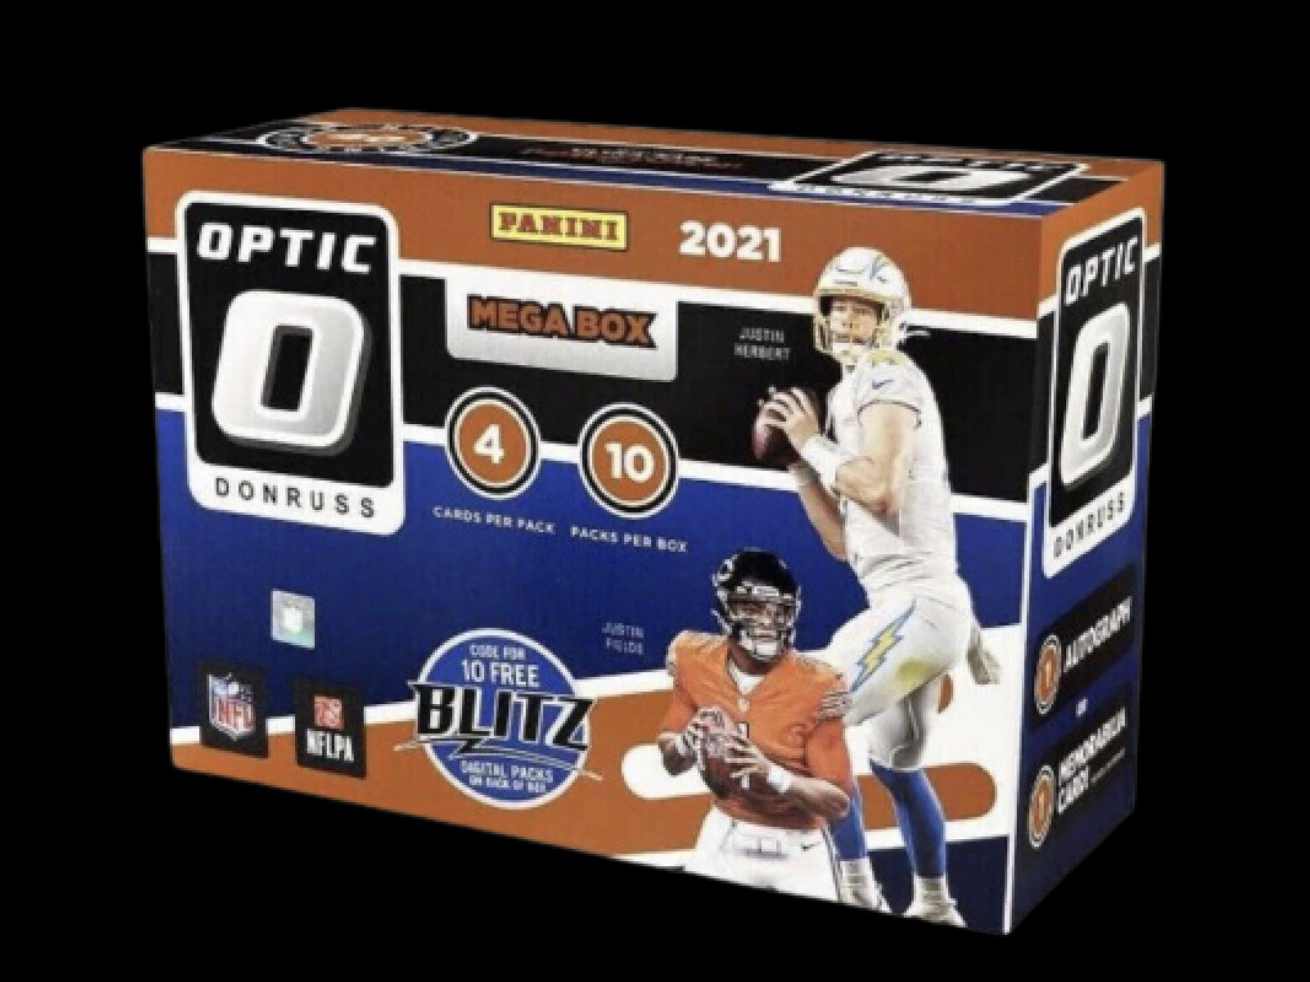 2021 Panini Donruss Optic Football Mega Box (Target)